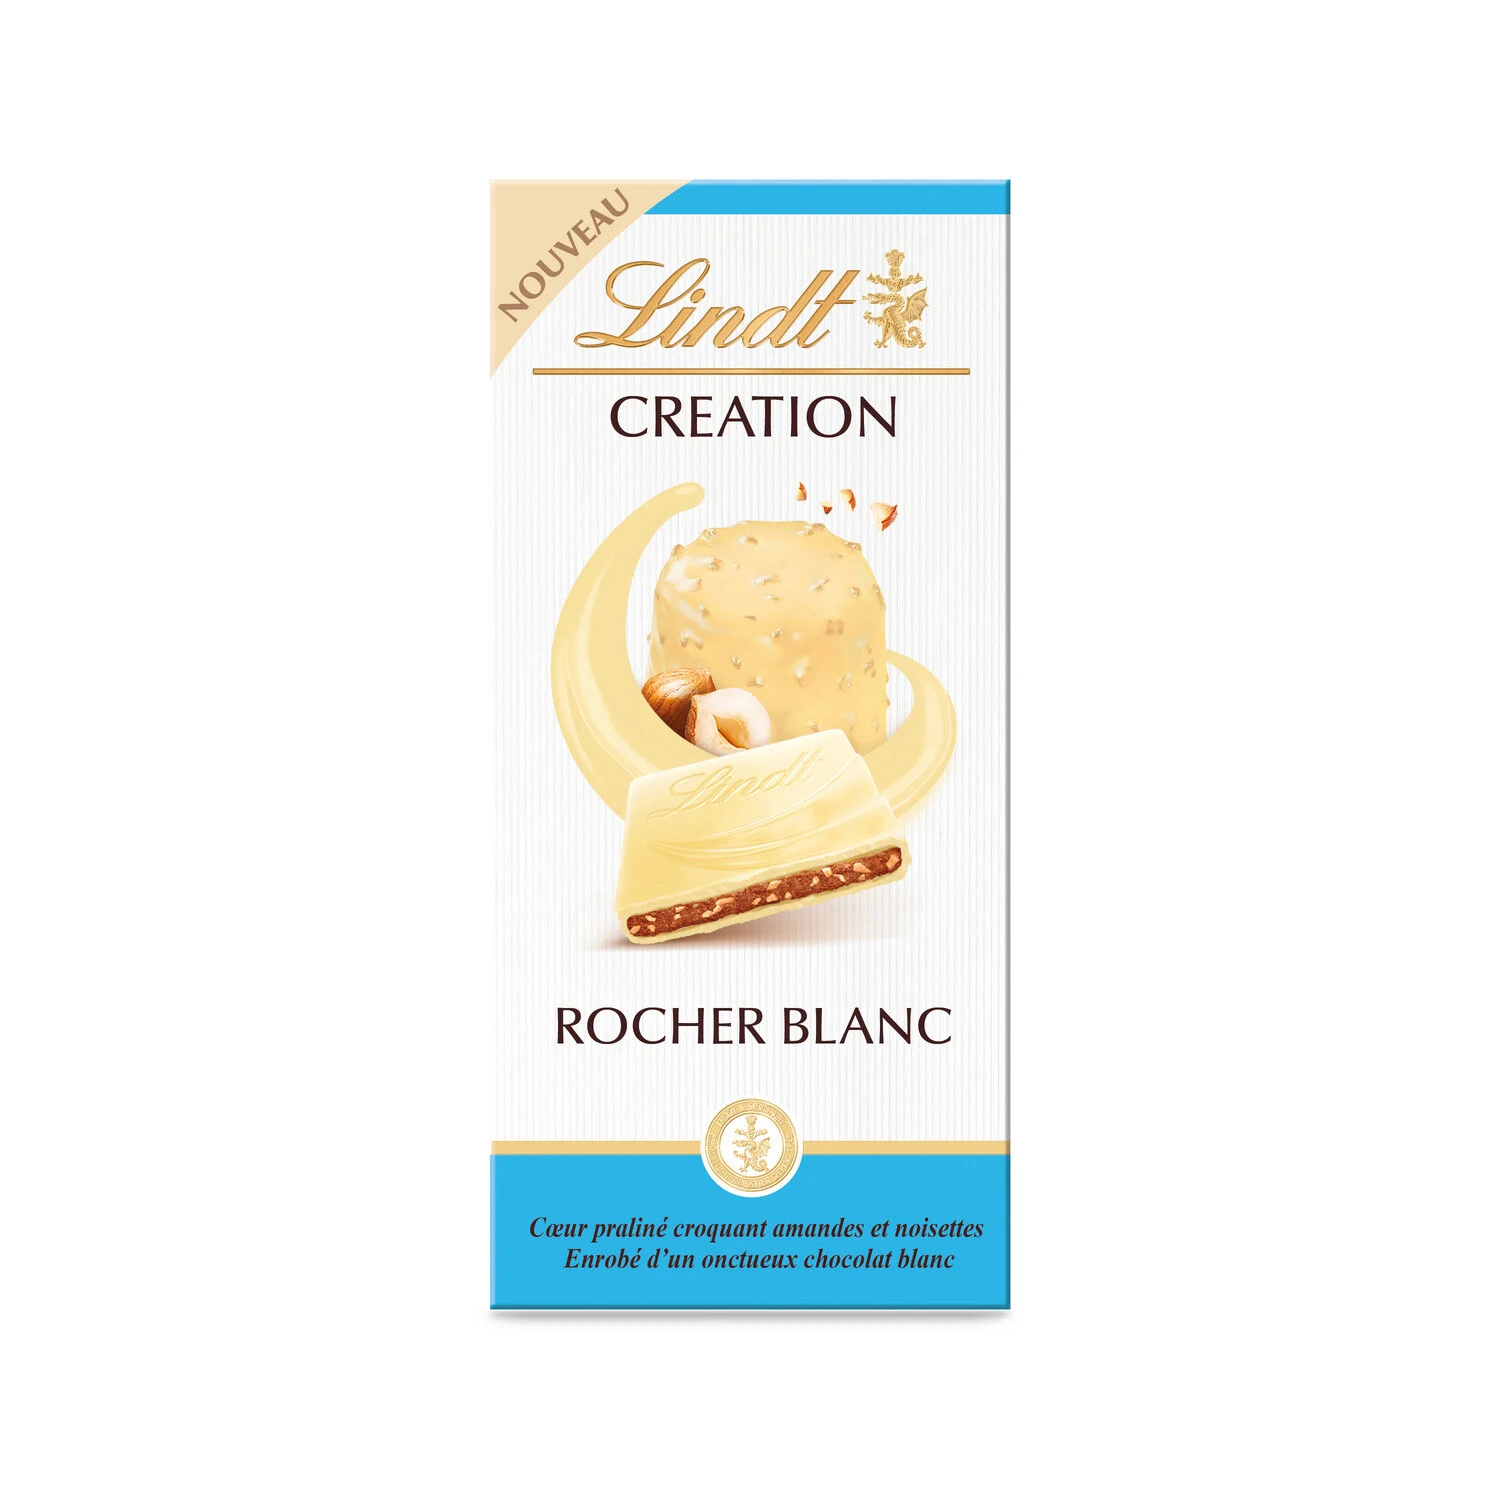 150g Creation Rocher Blanc